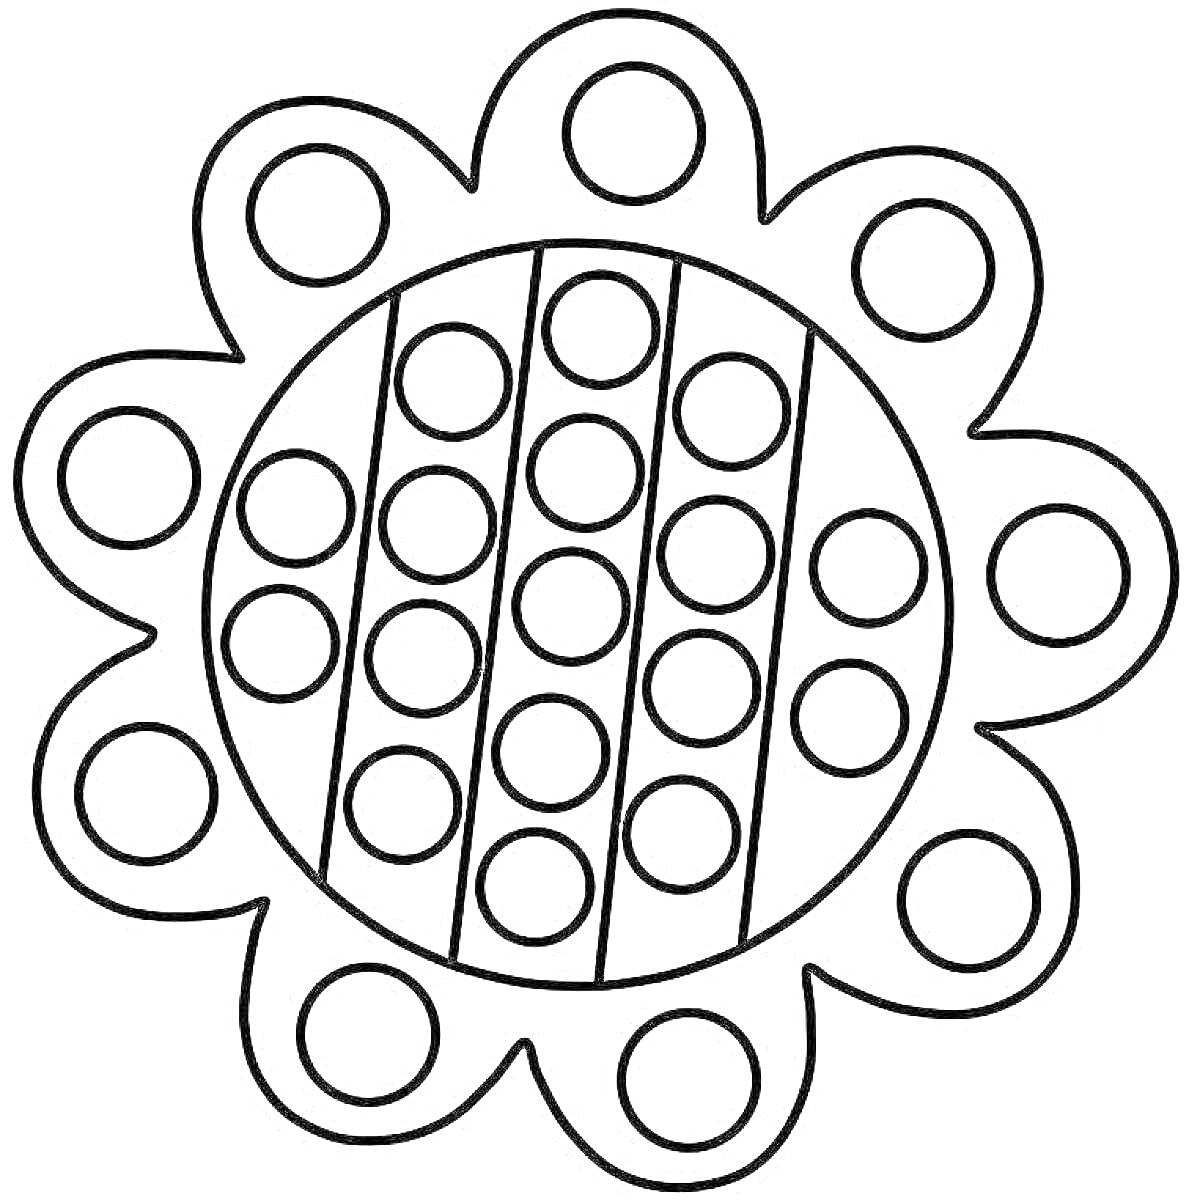 Раскраска Поп ит в форме цветка с круглыми элементами для нажатия